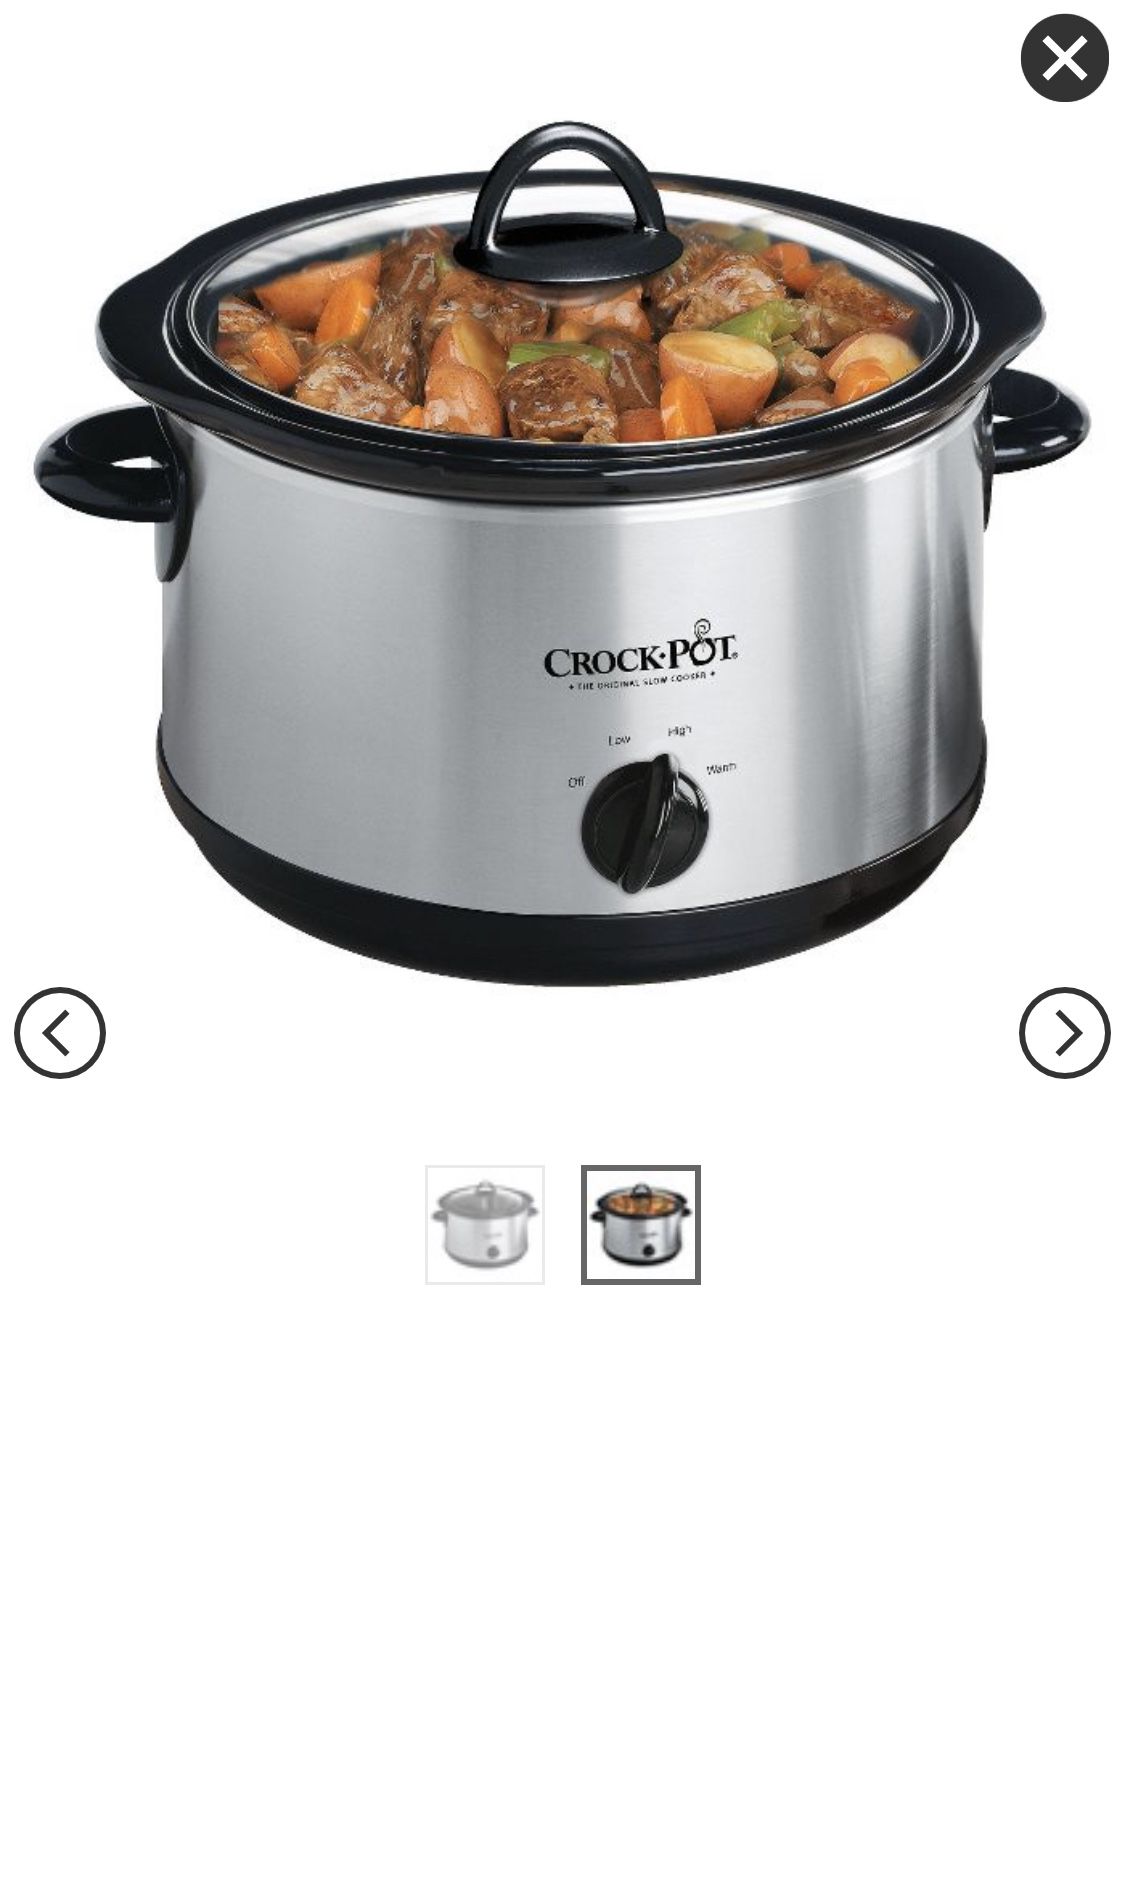 Crock-Pot 4.5qt Manual Slow Cooker